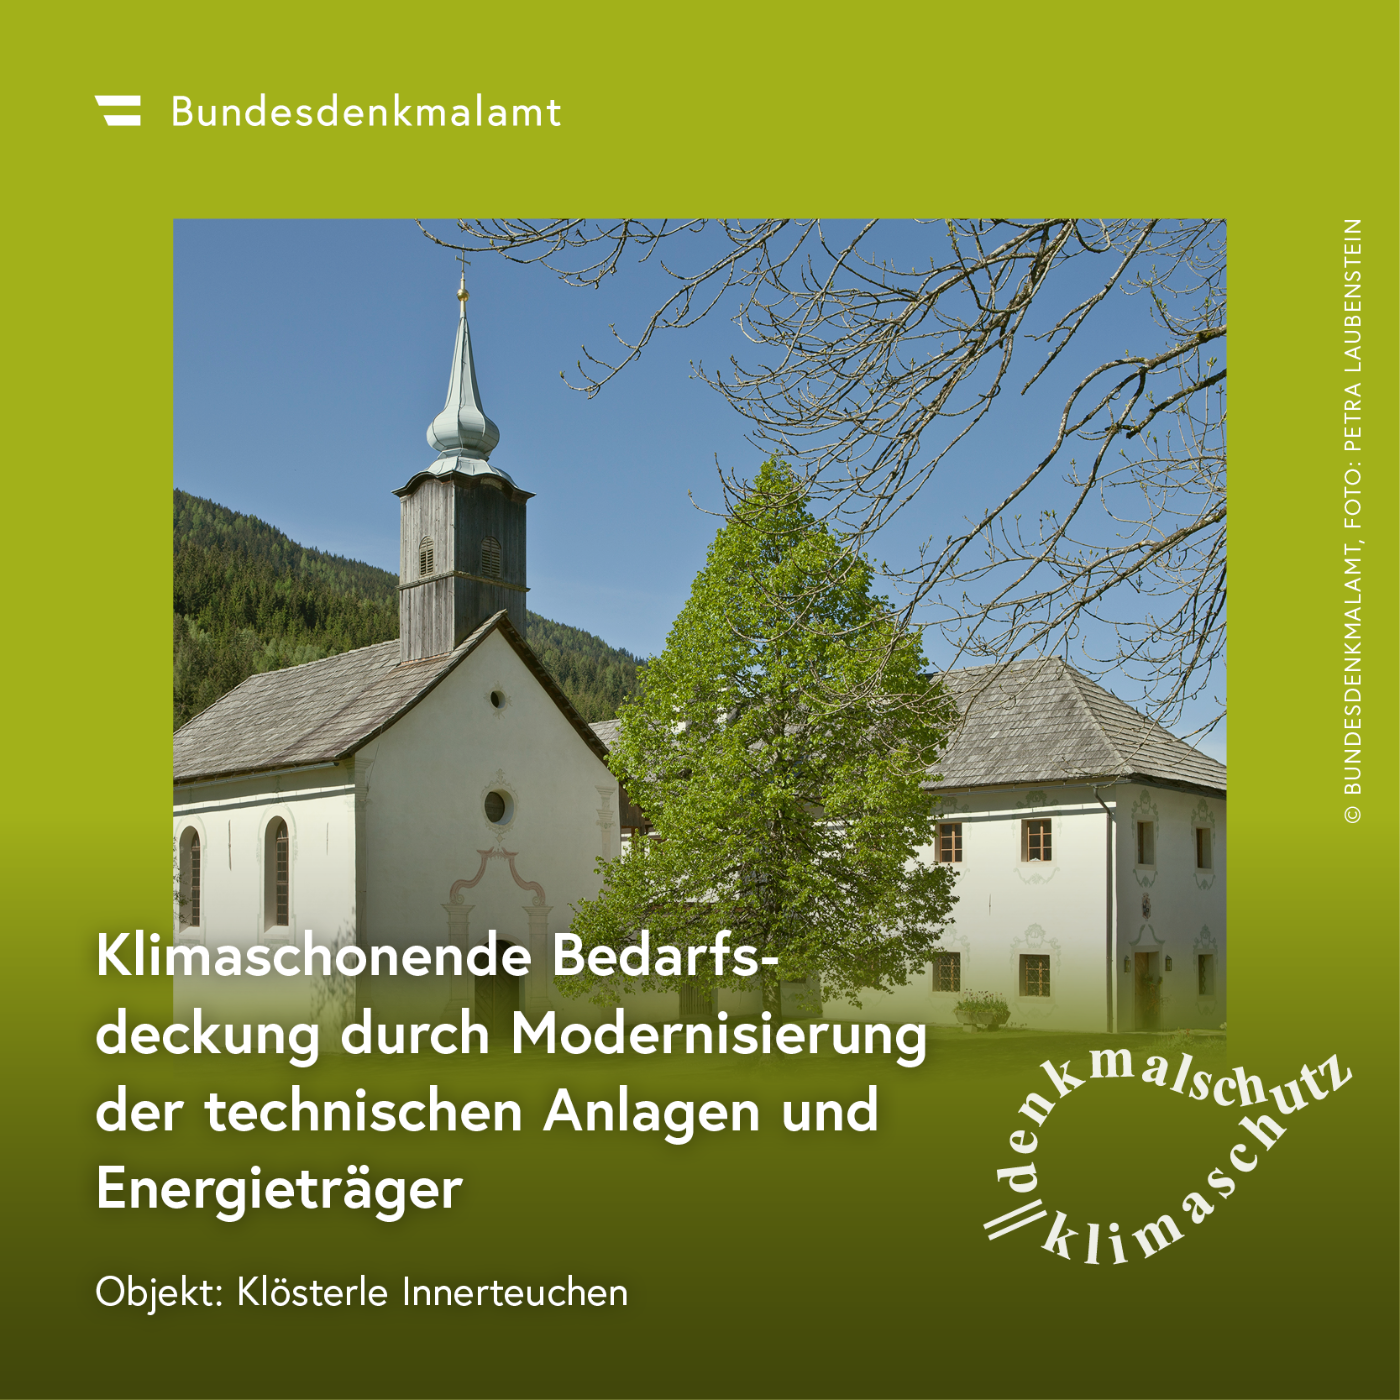 Sujet der Kampagne "Denkmalschutz ist Klimaschutz" - Klösterle in Innerteuchen (Kärnten)